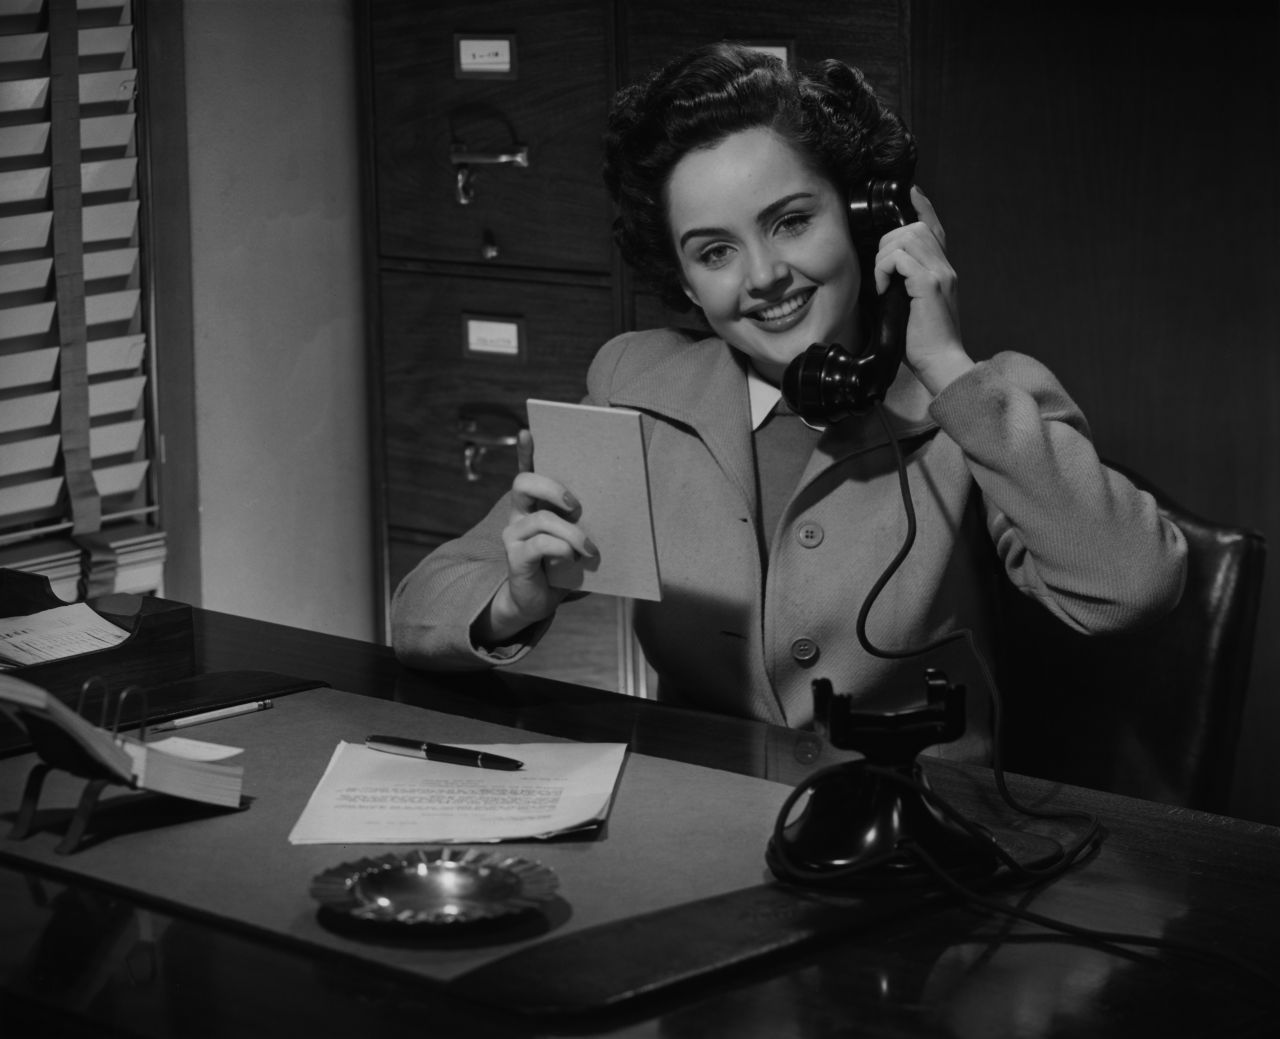 Schon deutlich moderner: Telefonieren im Büro in den 50er-Jahren.